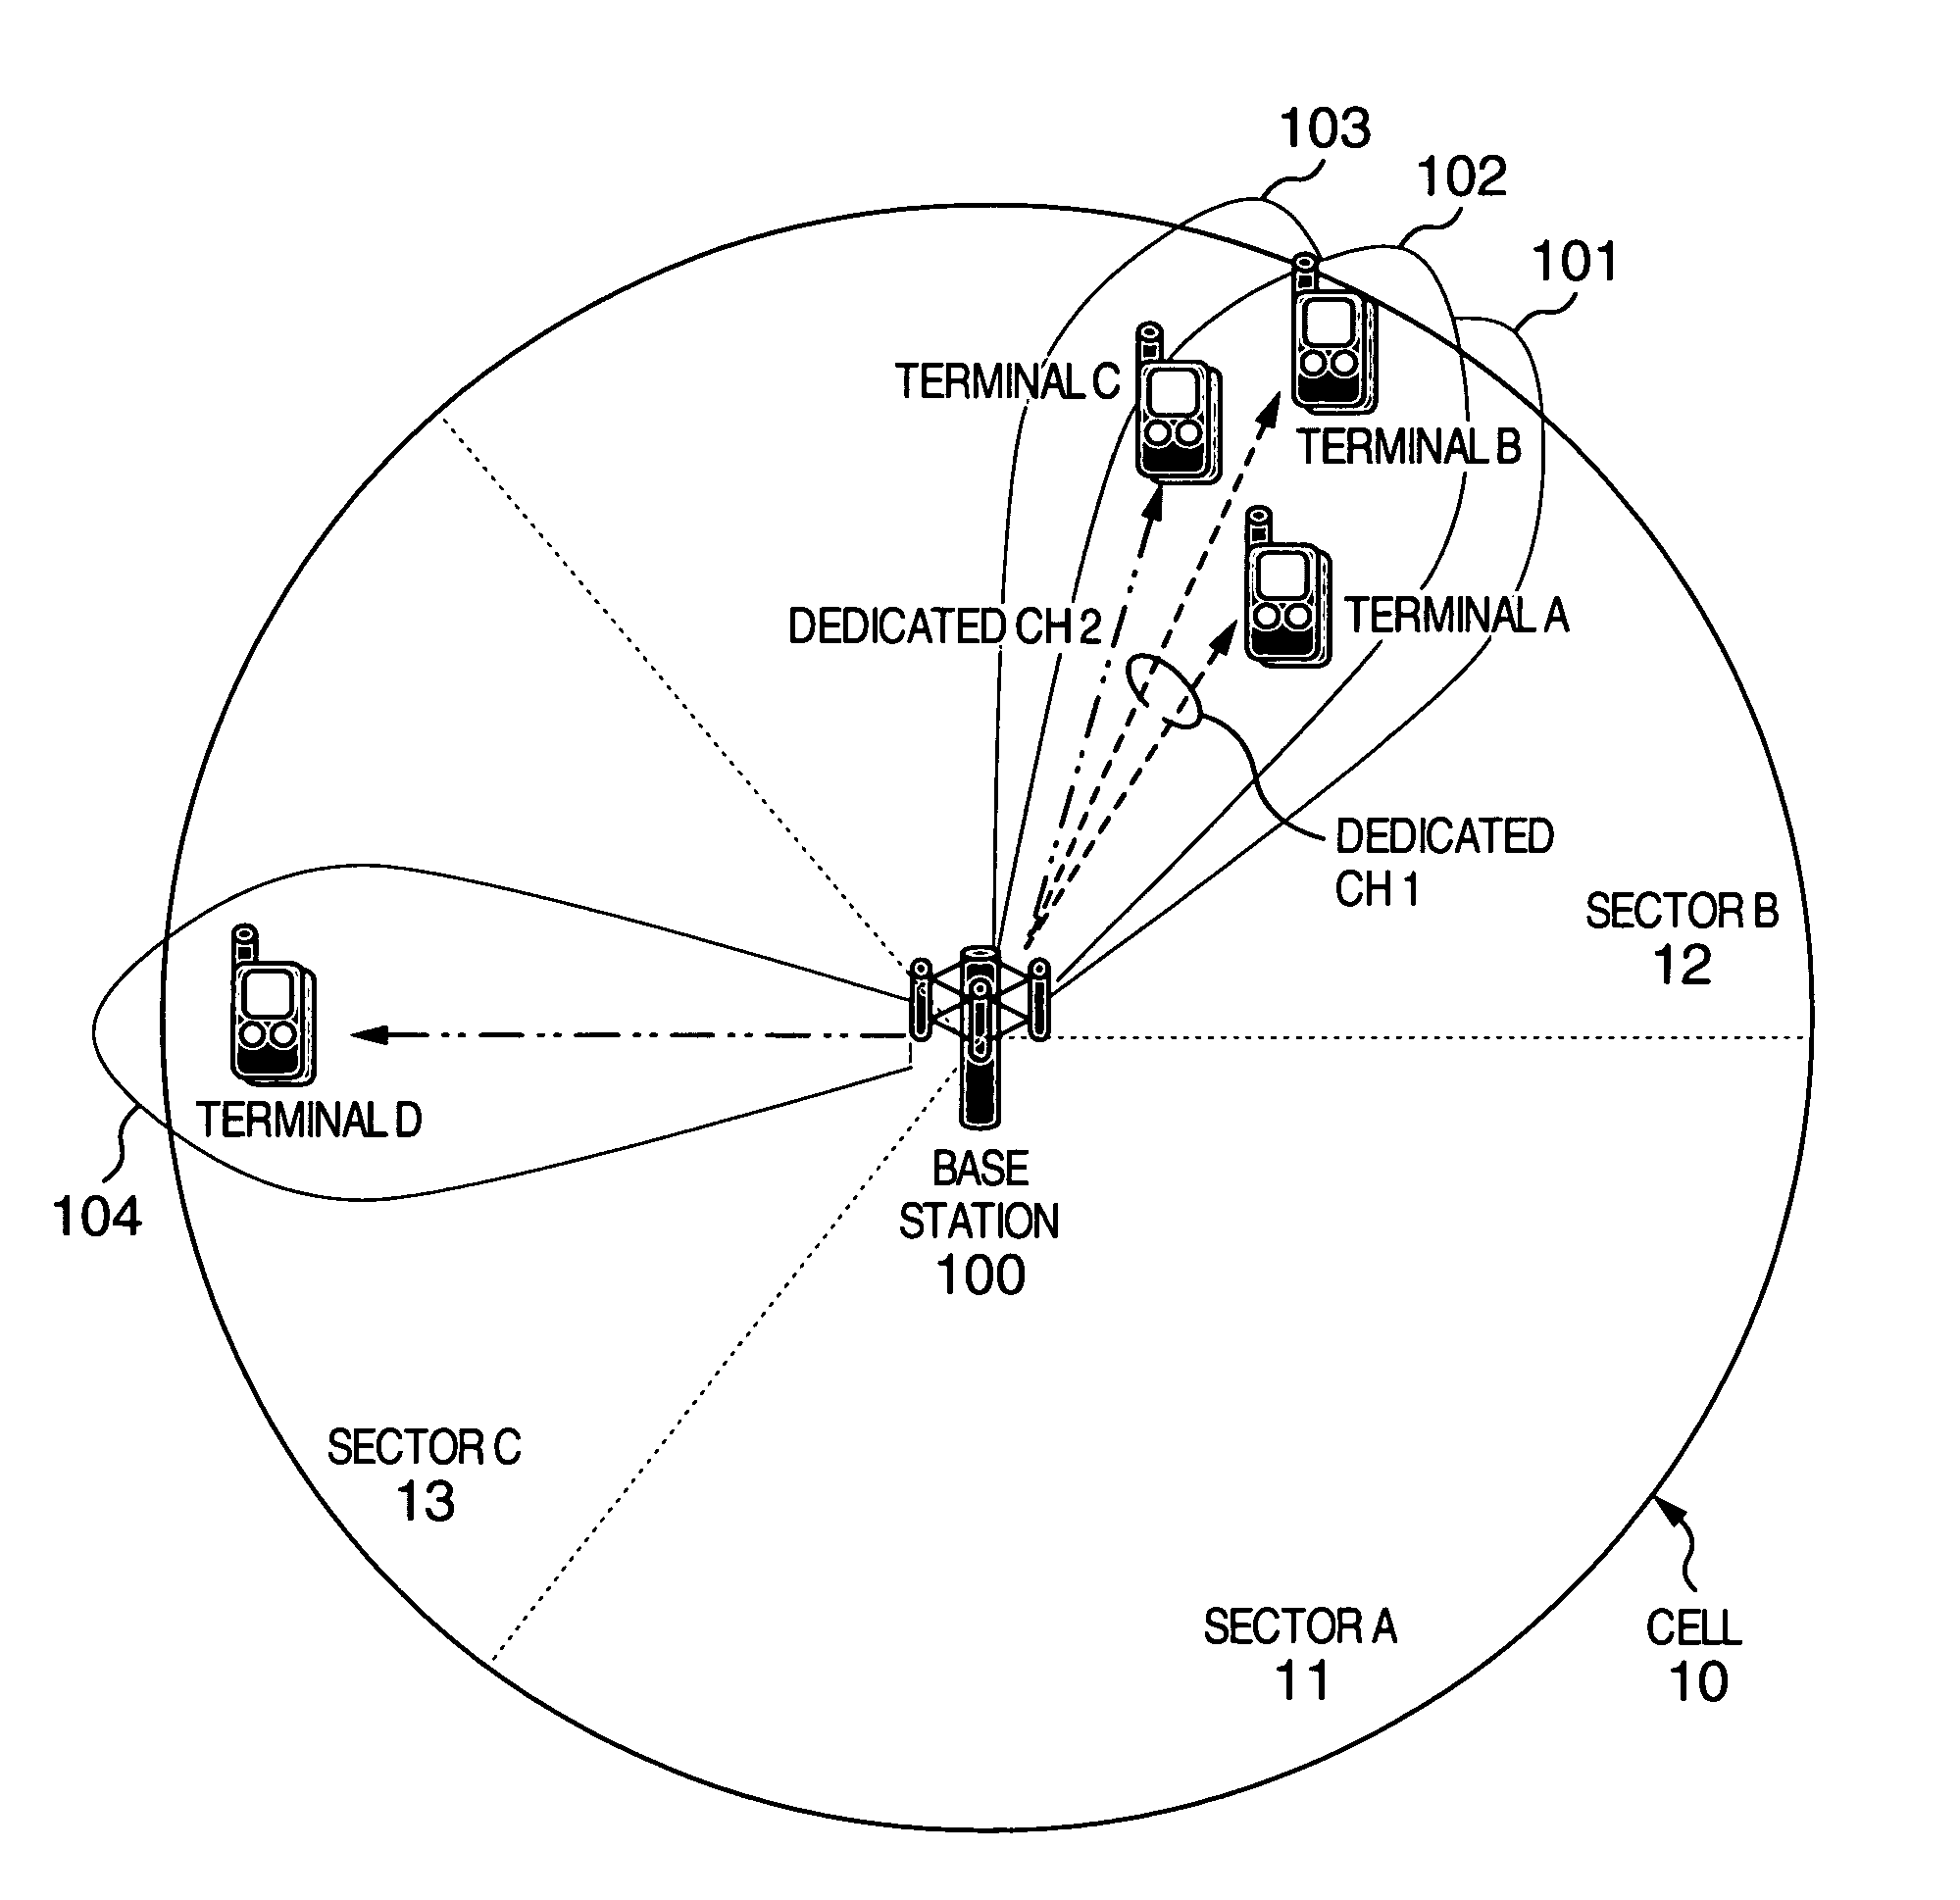 Radio signal communication method, base station and terminal station